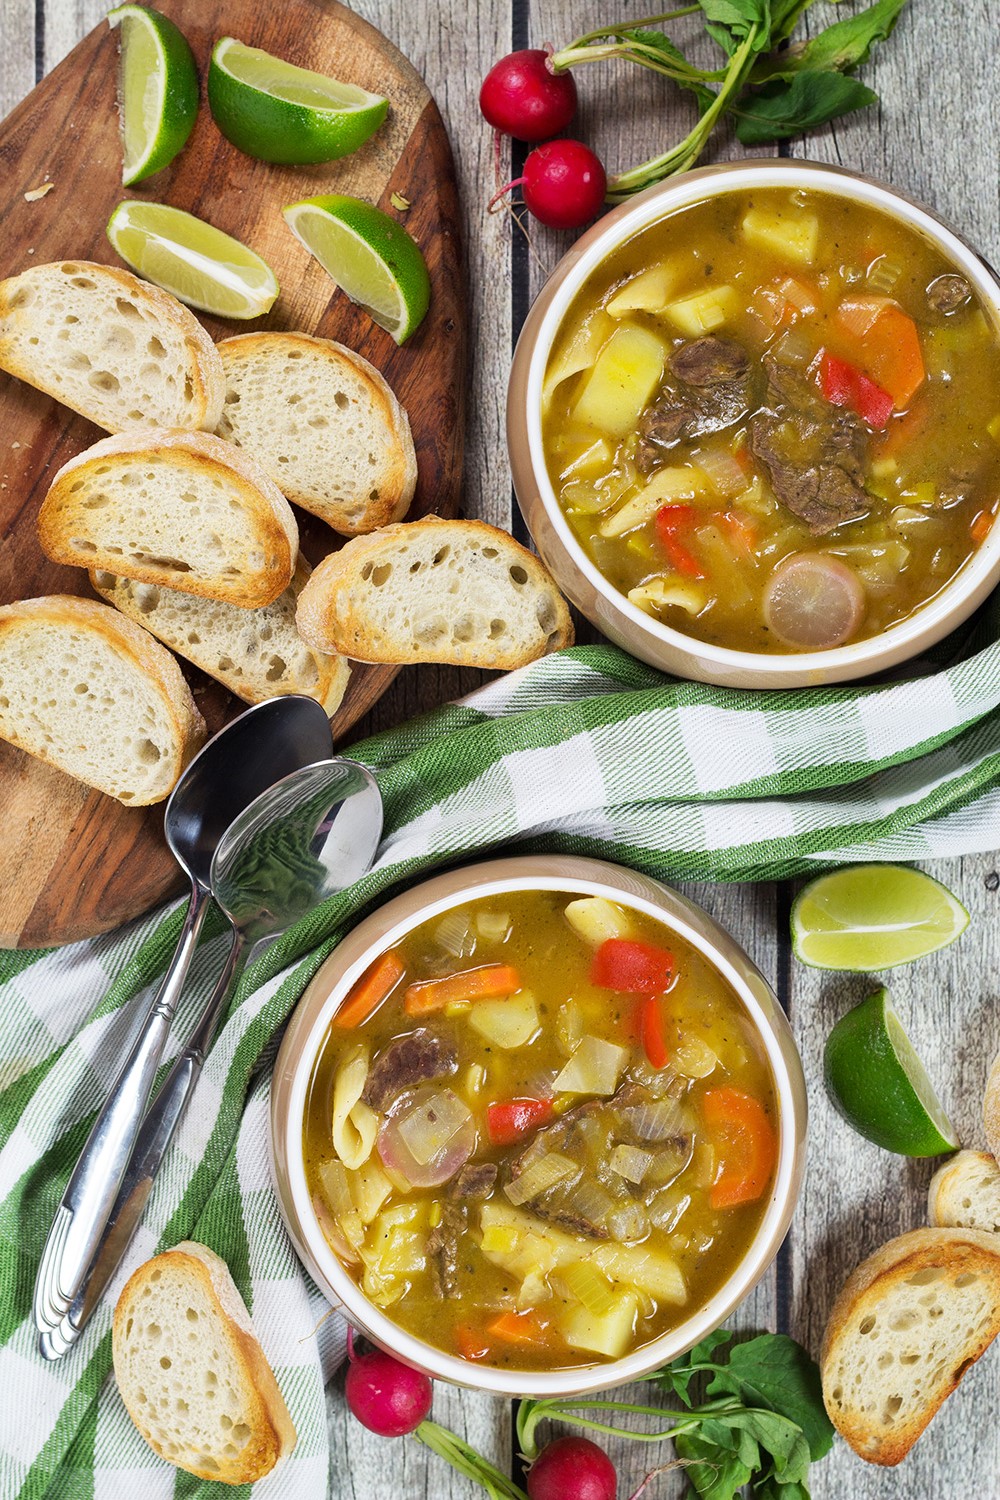 soup joumou – haitian new year’s soup